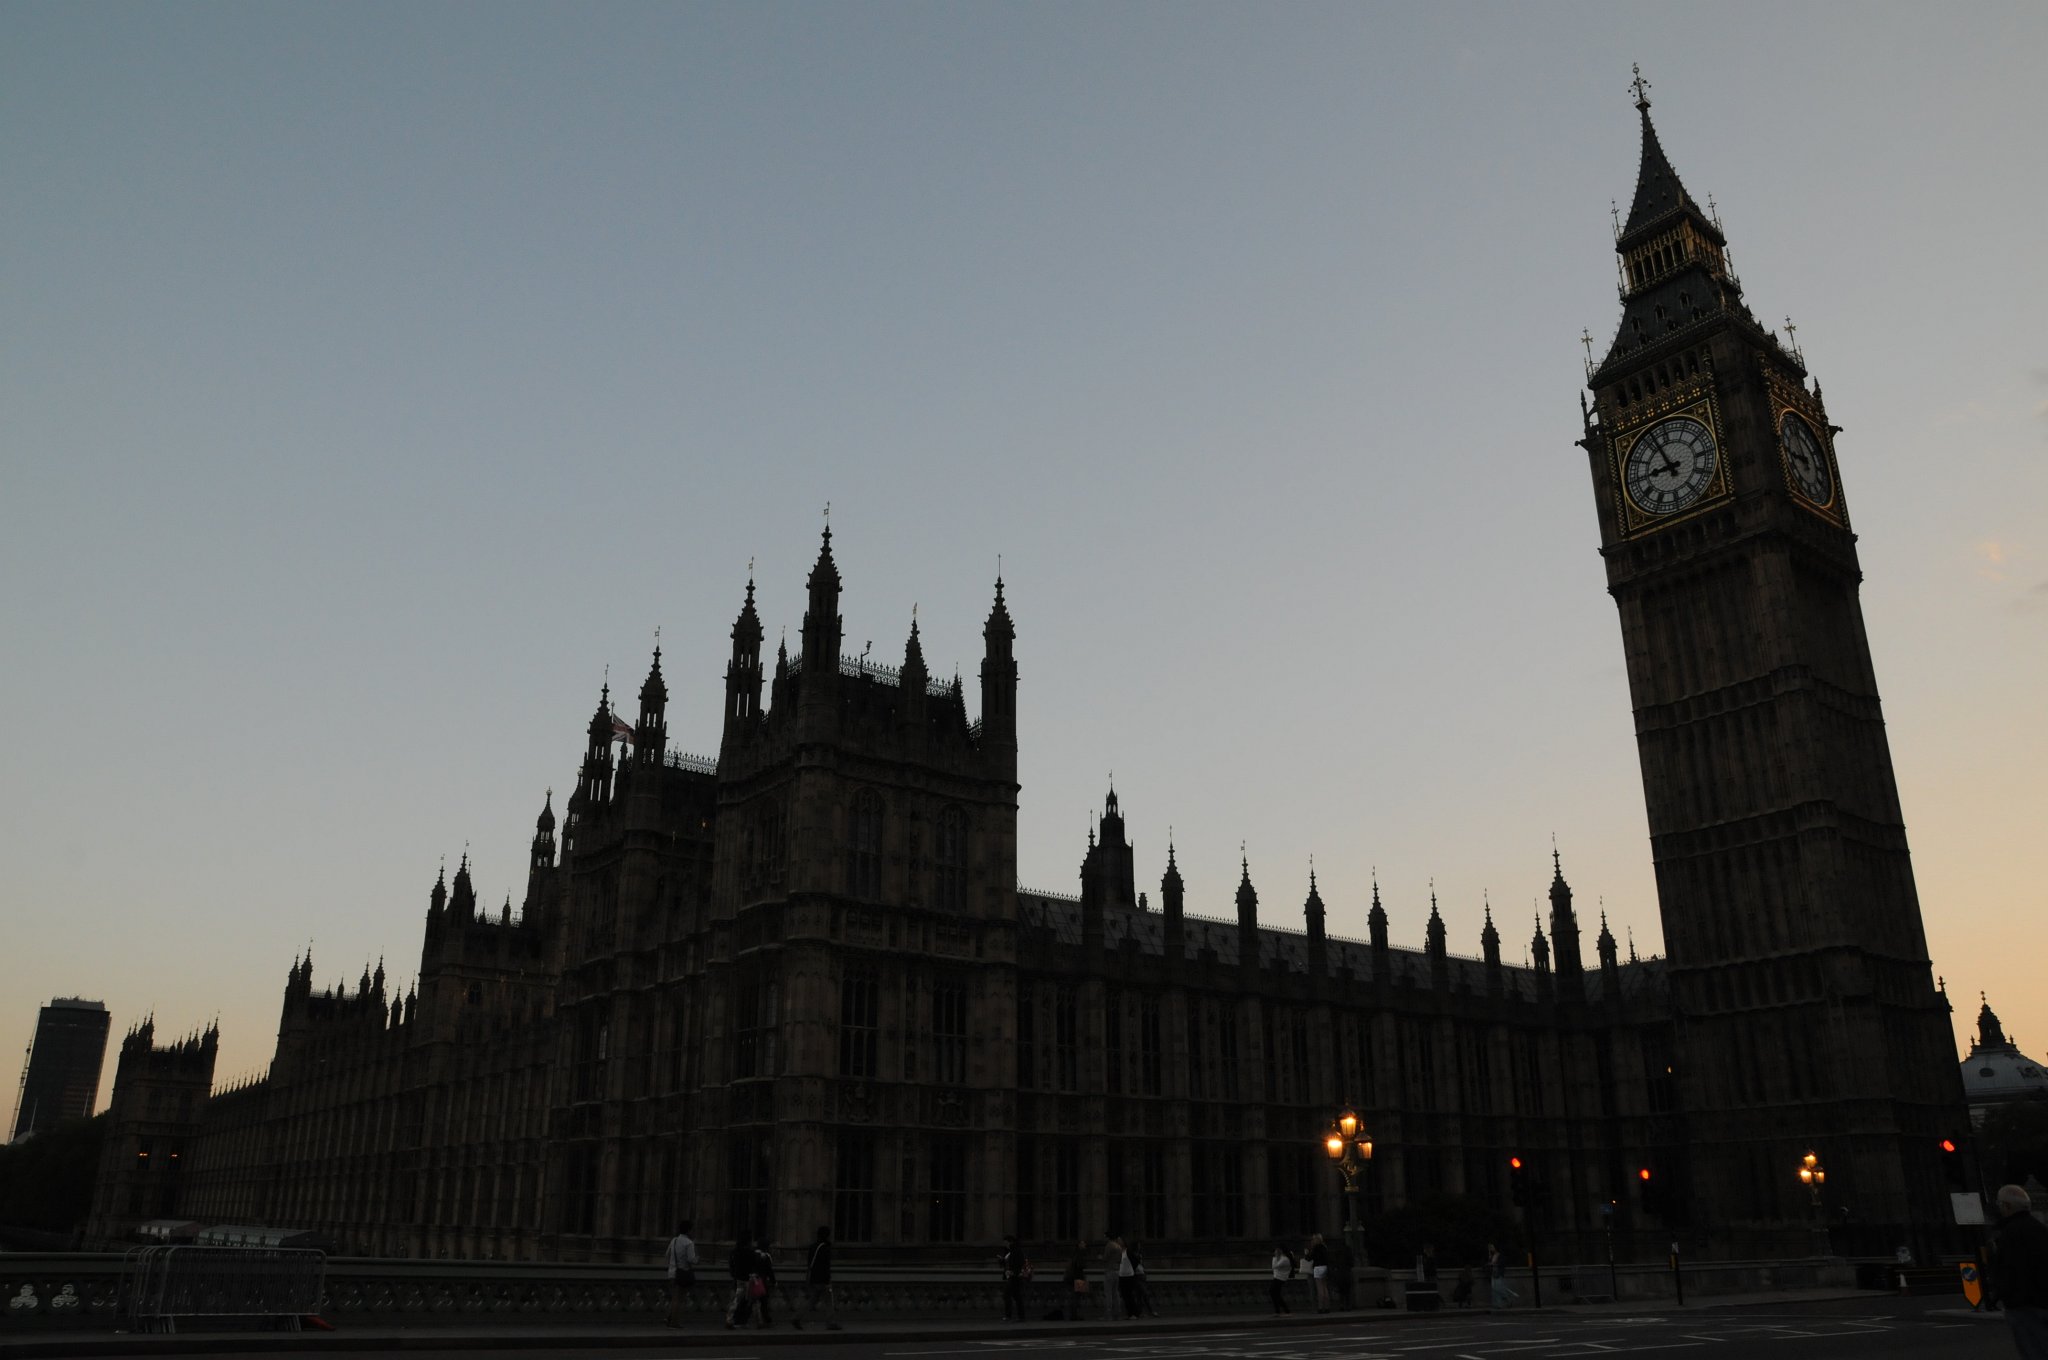 DSC_3420.JPG - Big Ben je hovorové označení používané pro hodinovou věž, která je součástí budovy Westminsterského paláce vedle Temže v Londýně a neformální pojmenování Velkého zvonu. Věž se tyčí nad severovýchodní straně paláce, ve kterém zasedá parlament.